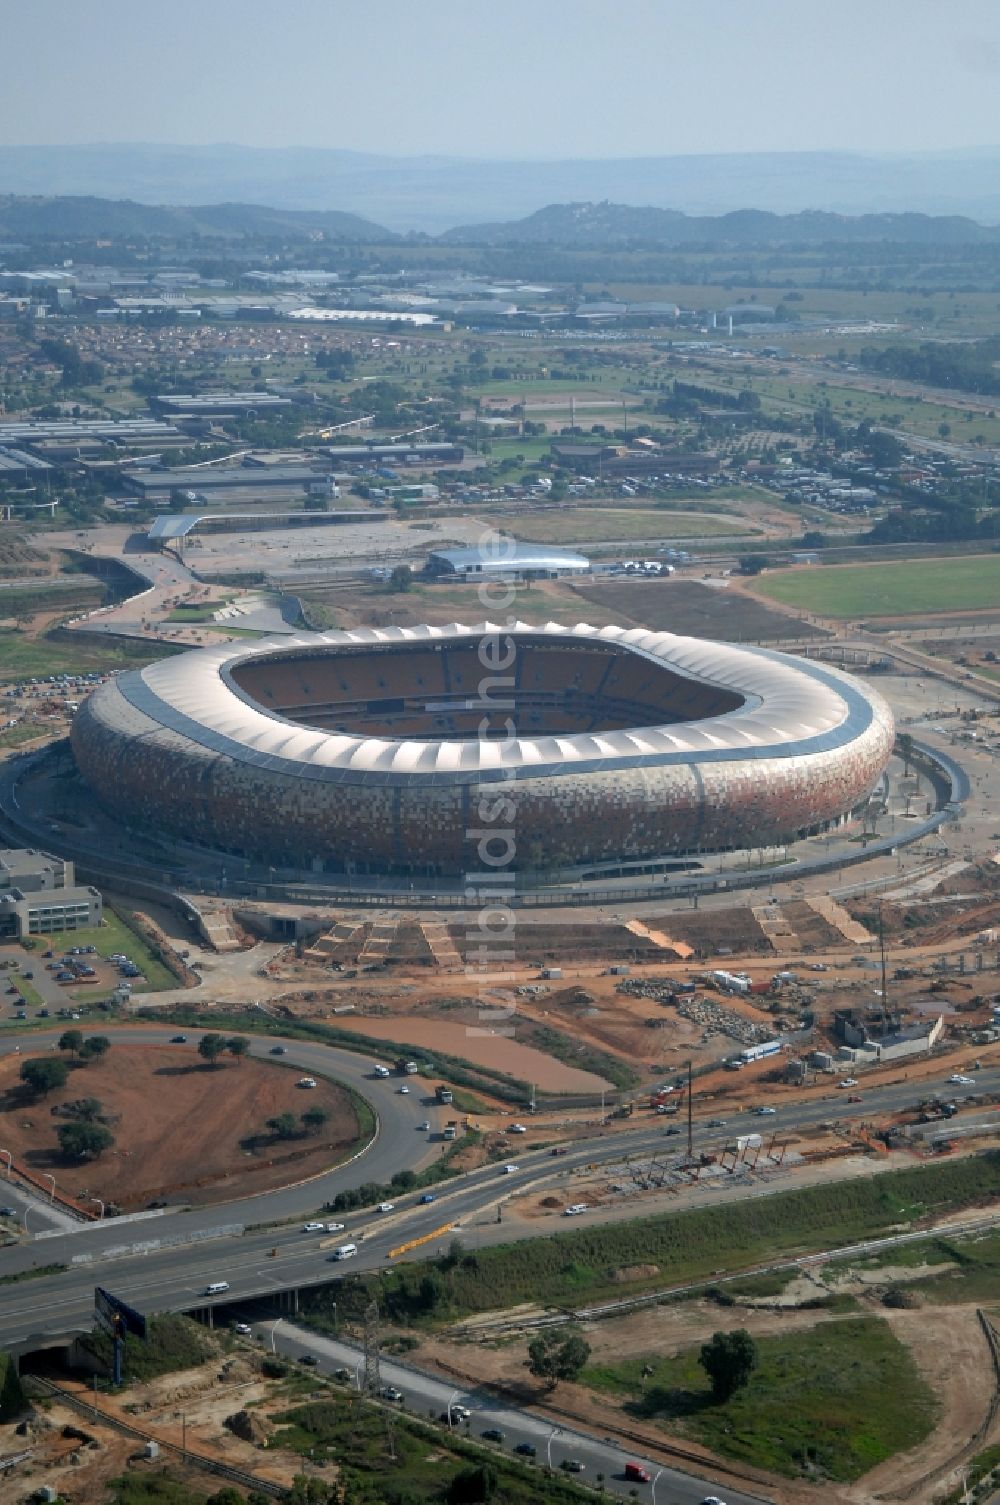 Johannesburg von oben - Sportstätten-Gelände der Arena des Stadion FNB Stadium Soccer an der City Soccer City Ave im Ortsteil Nasrec in Johannesburg South in Gauteng, Südafrika